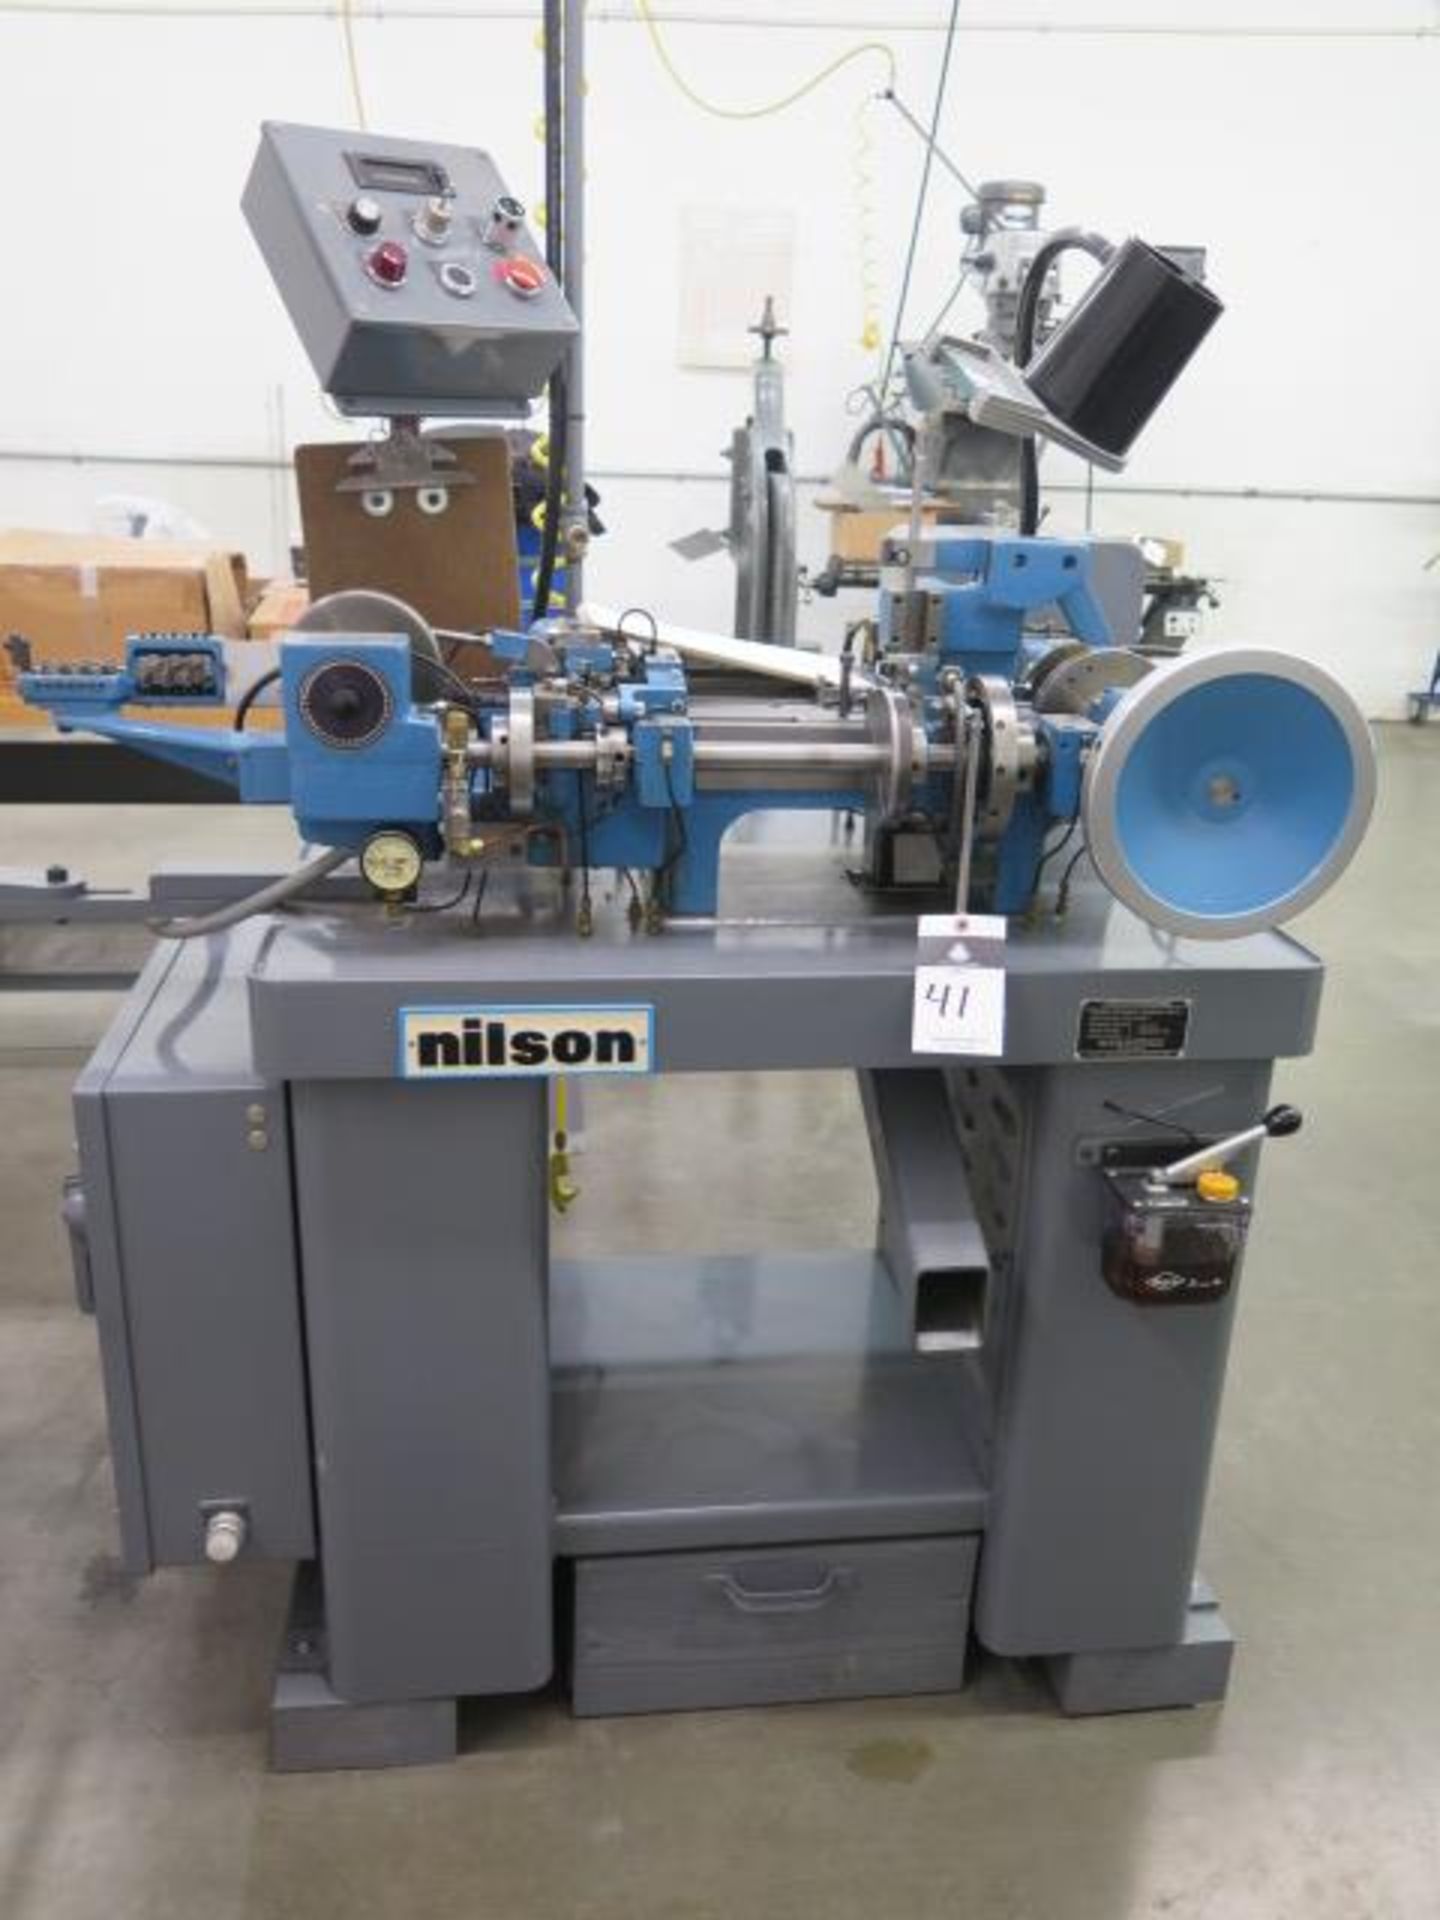 Nilson mdl. 700/L 1/32" Cap 4-Slide Machine s/n 110955 w/ Cutoff Head, 1-Ton Press Head, Misc Access